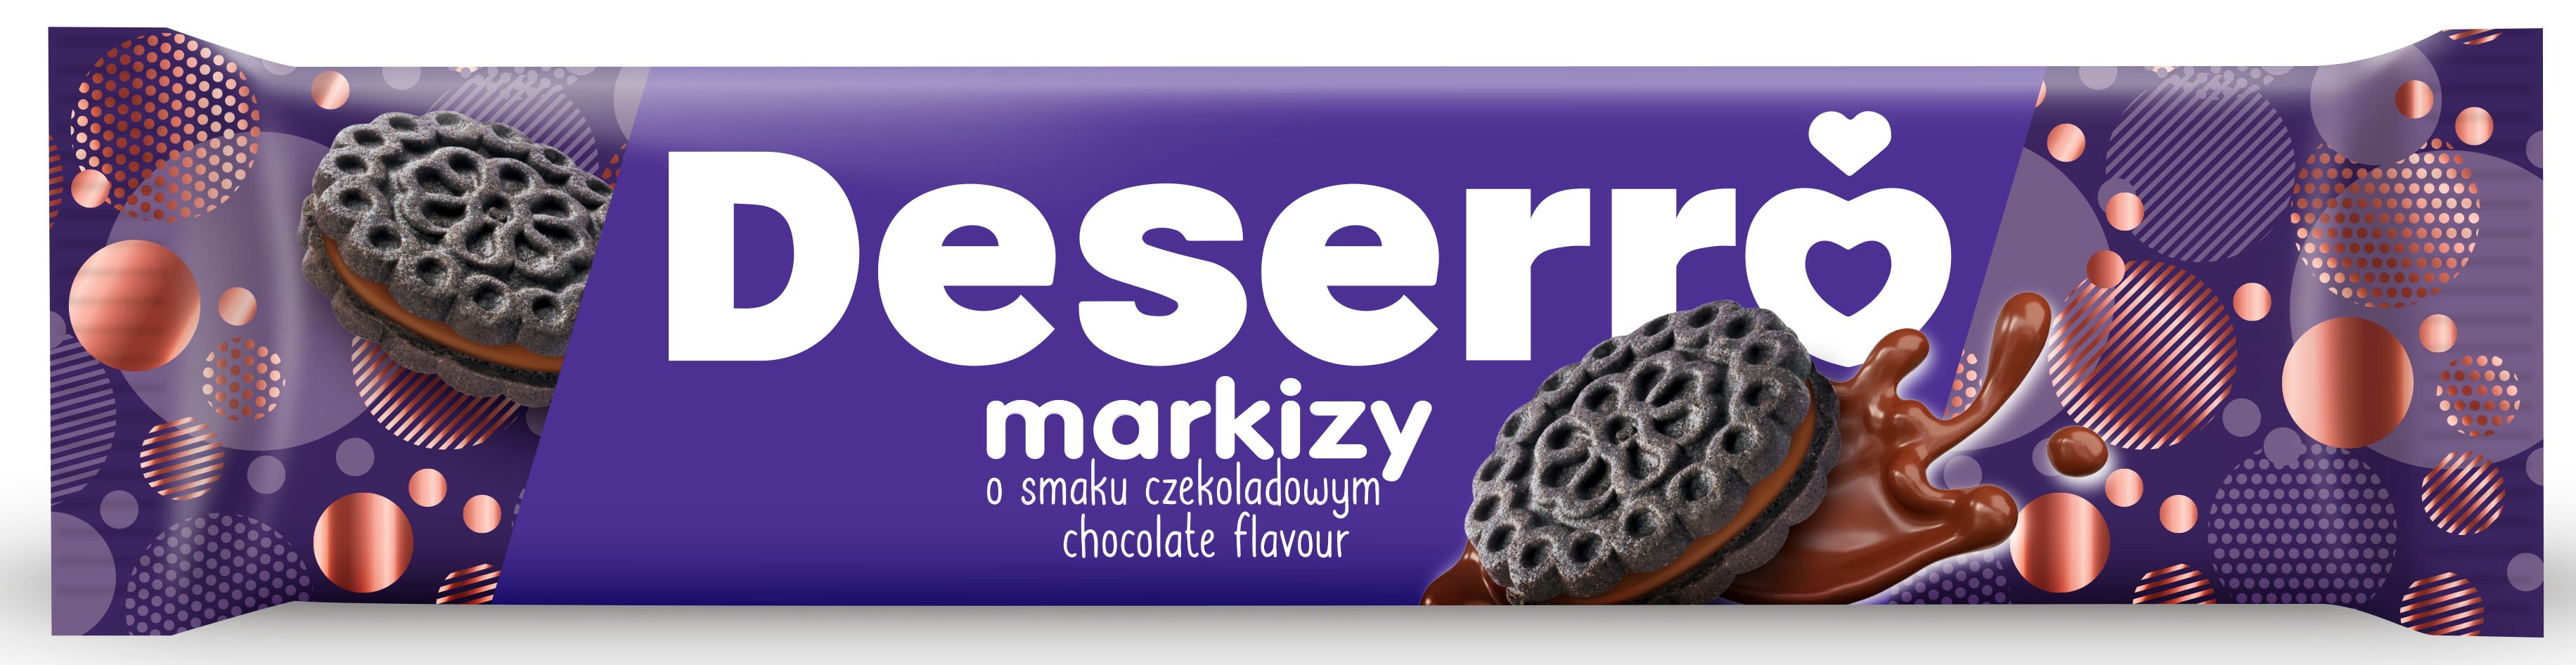 Cukry Nyskie Deserro markizy o smaku czekoladowym